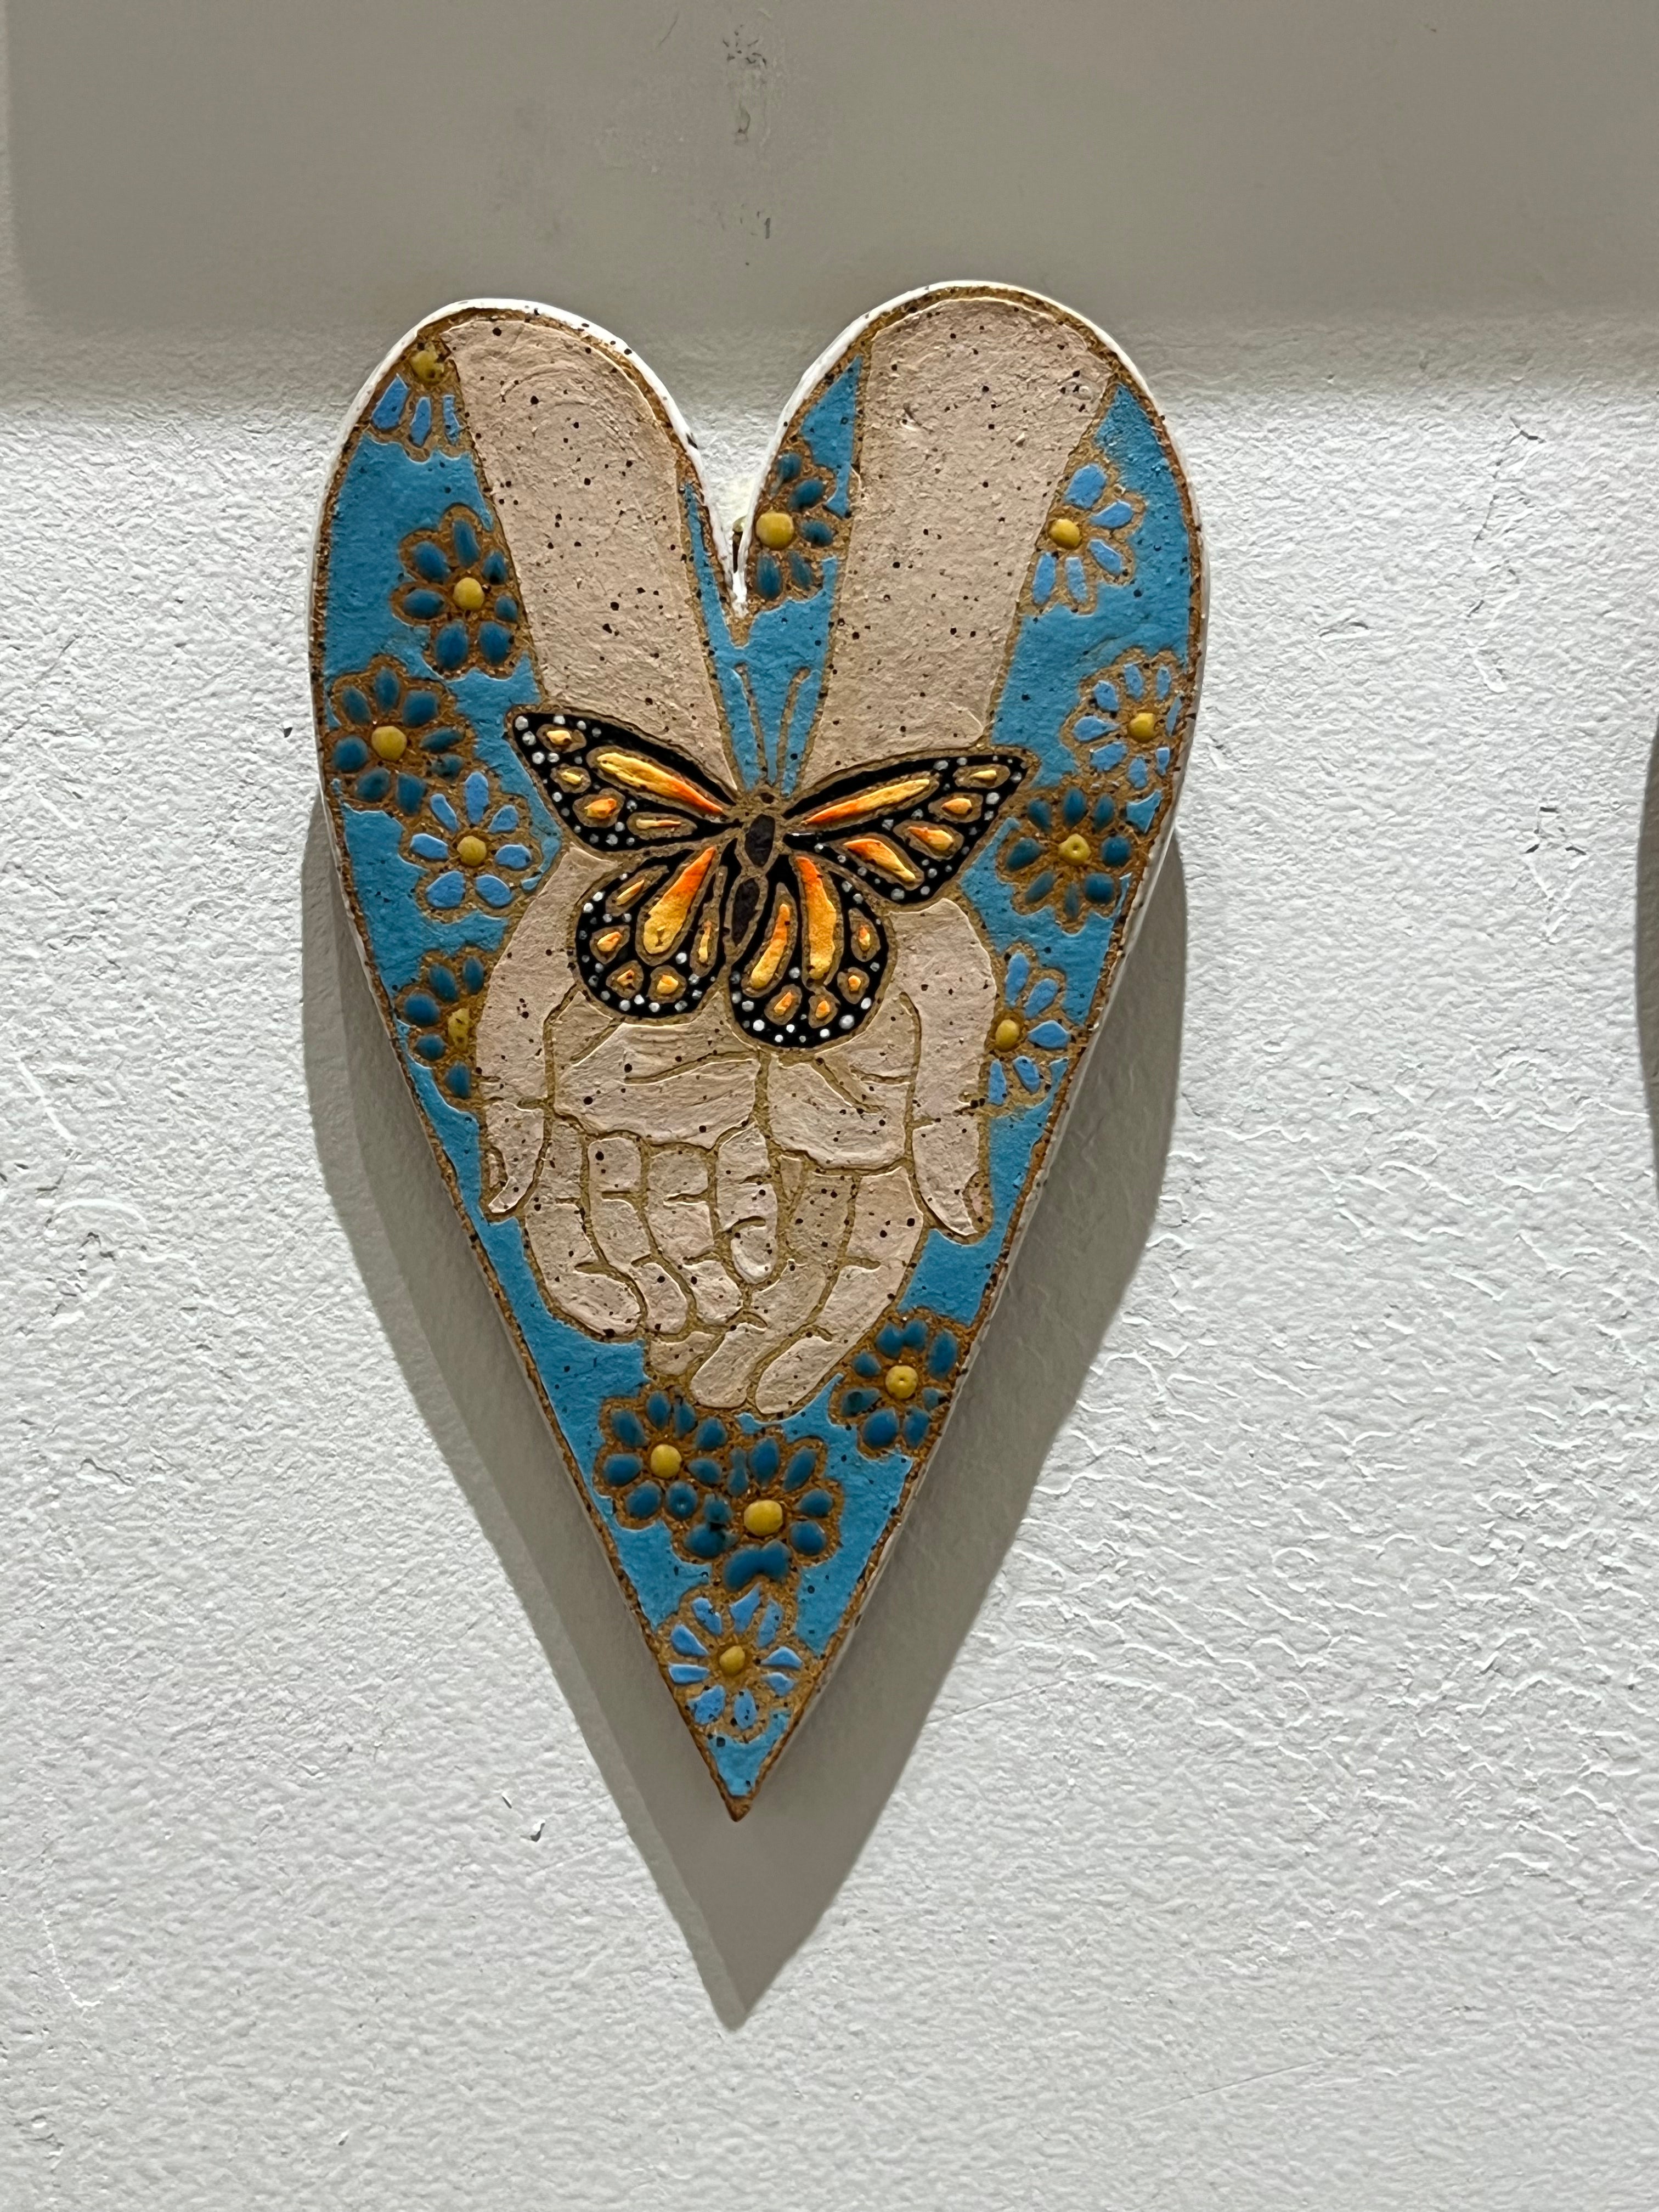 $150 Ceramic Hearts by Sadie Joy Muhlestein